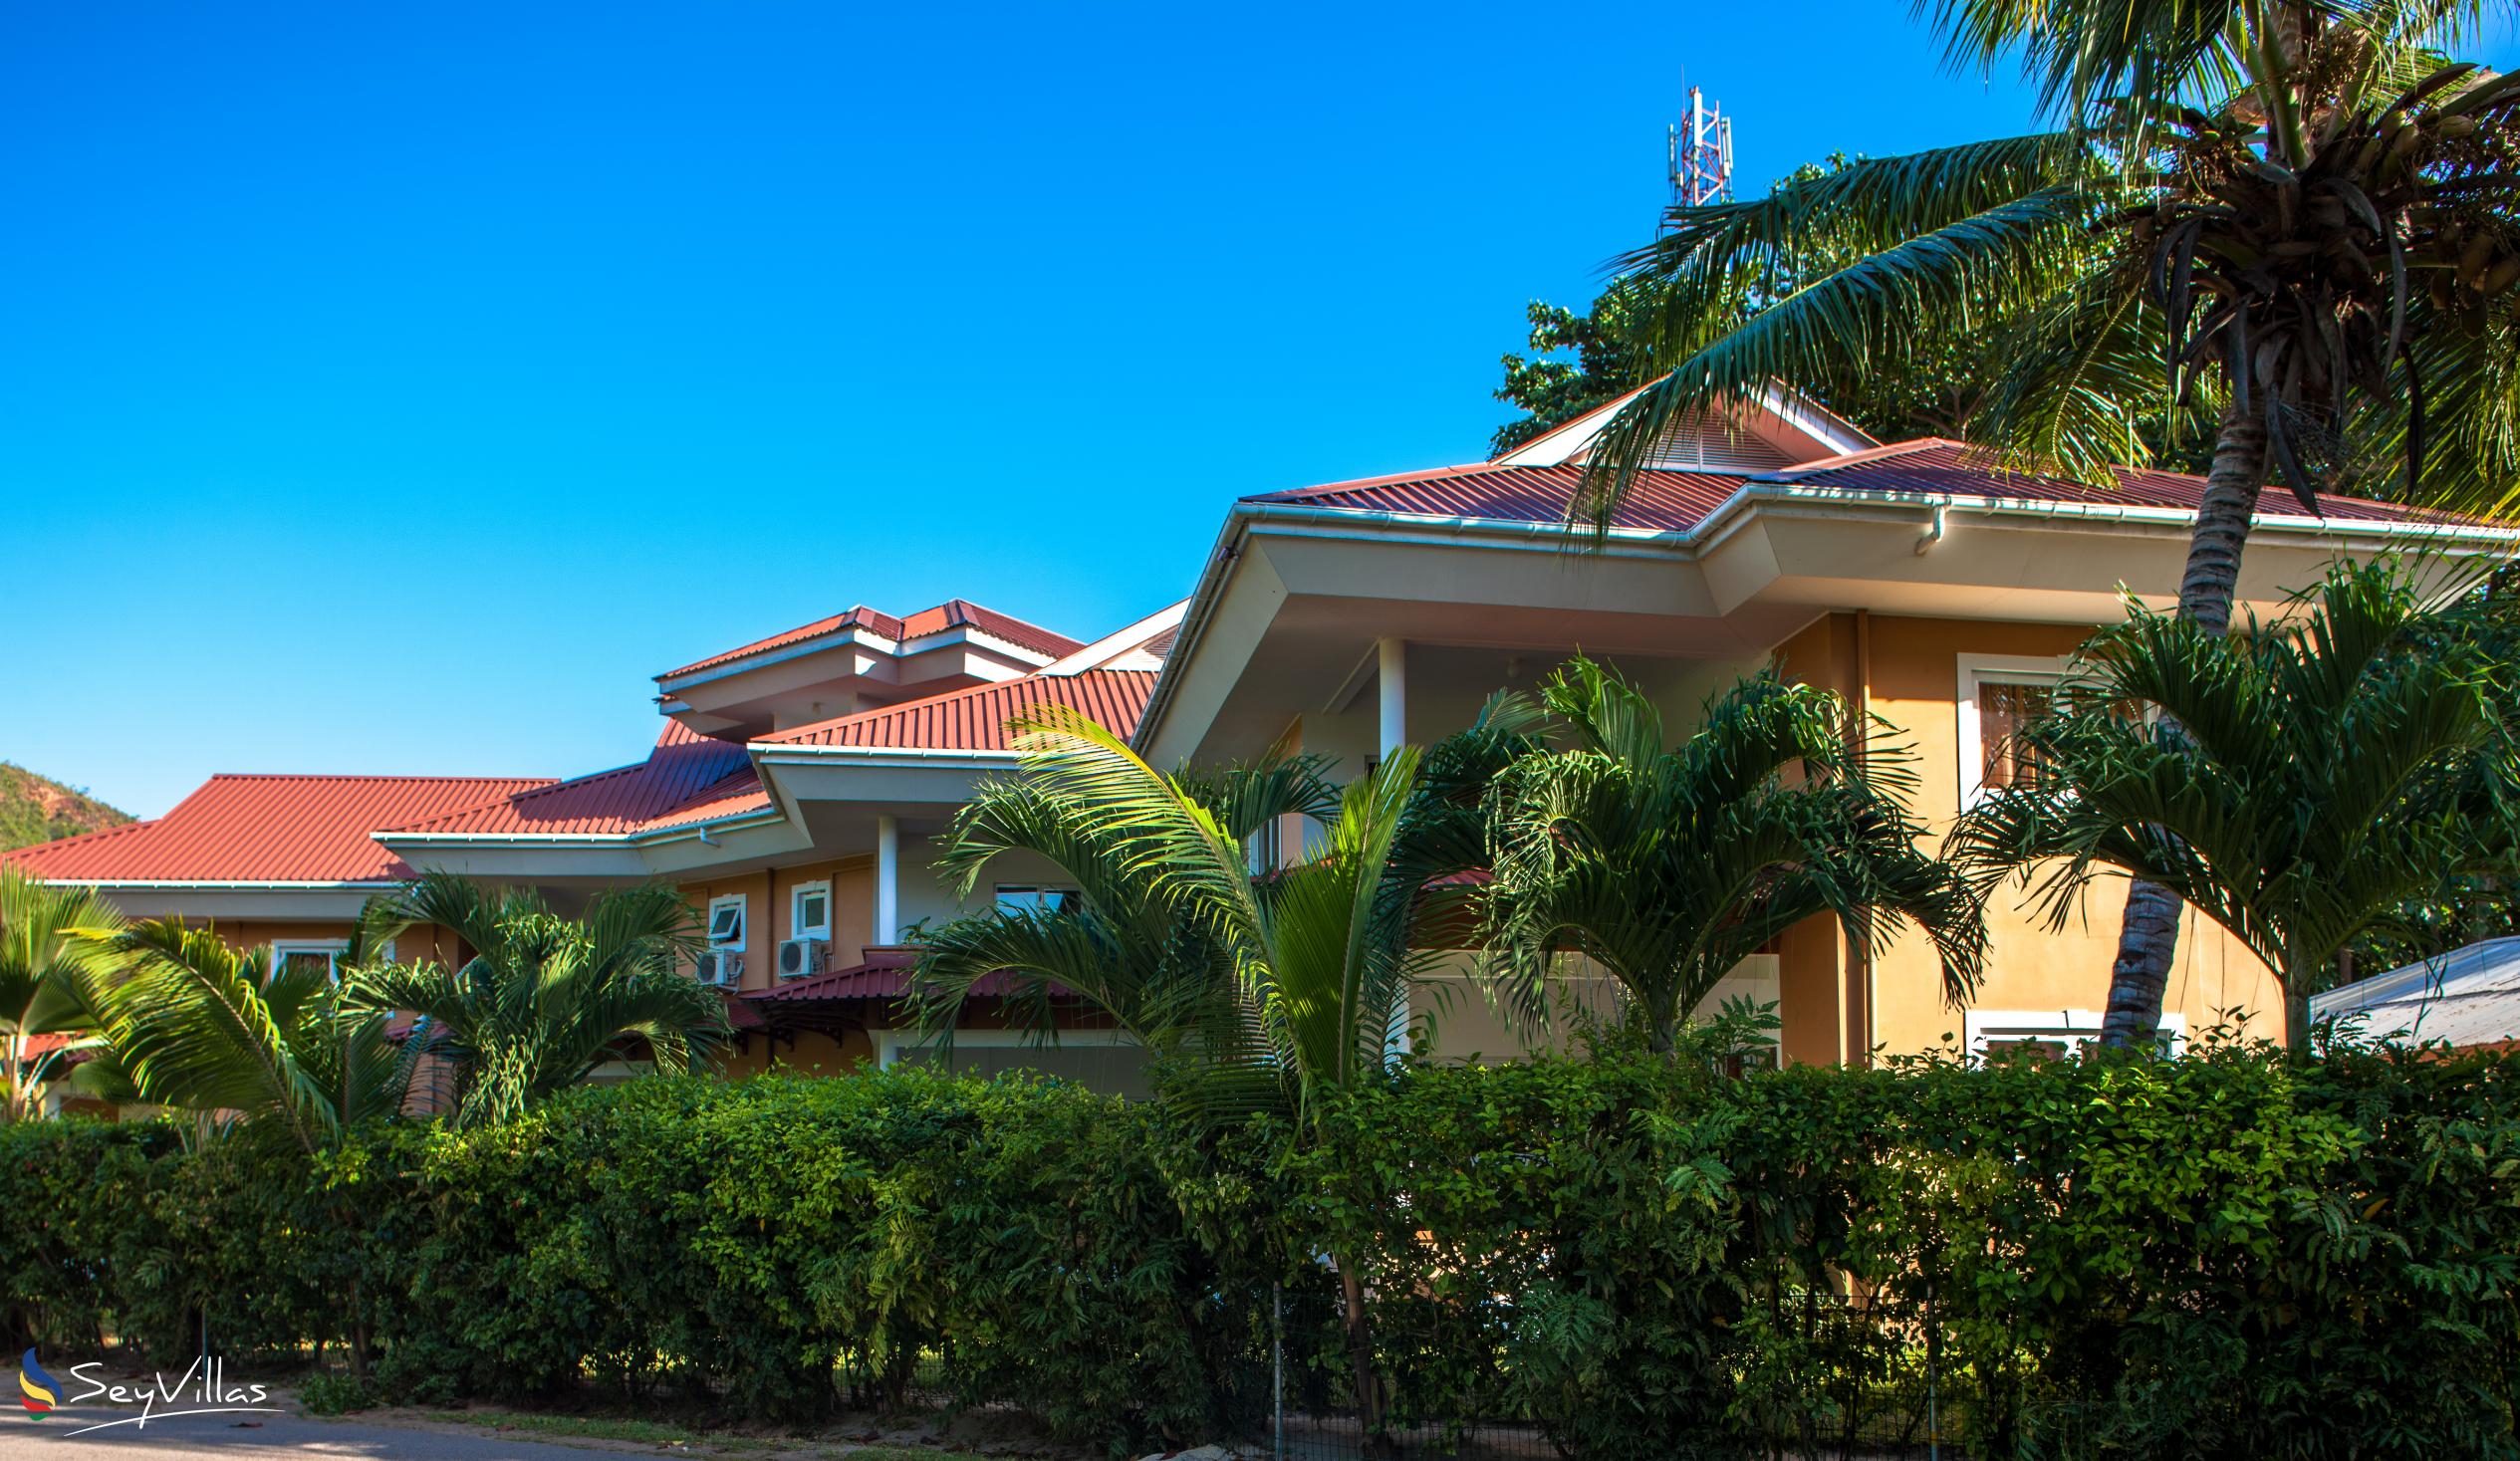 Foto 11: Cote d'Or Apartments - Aussenbereich - Praslin (Seychellen)